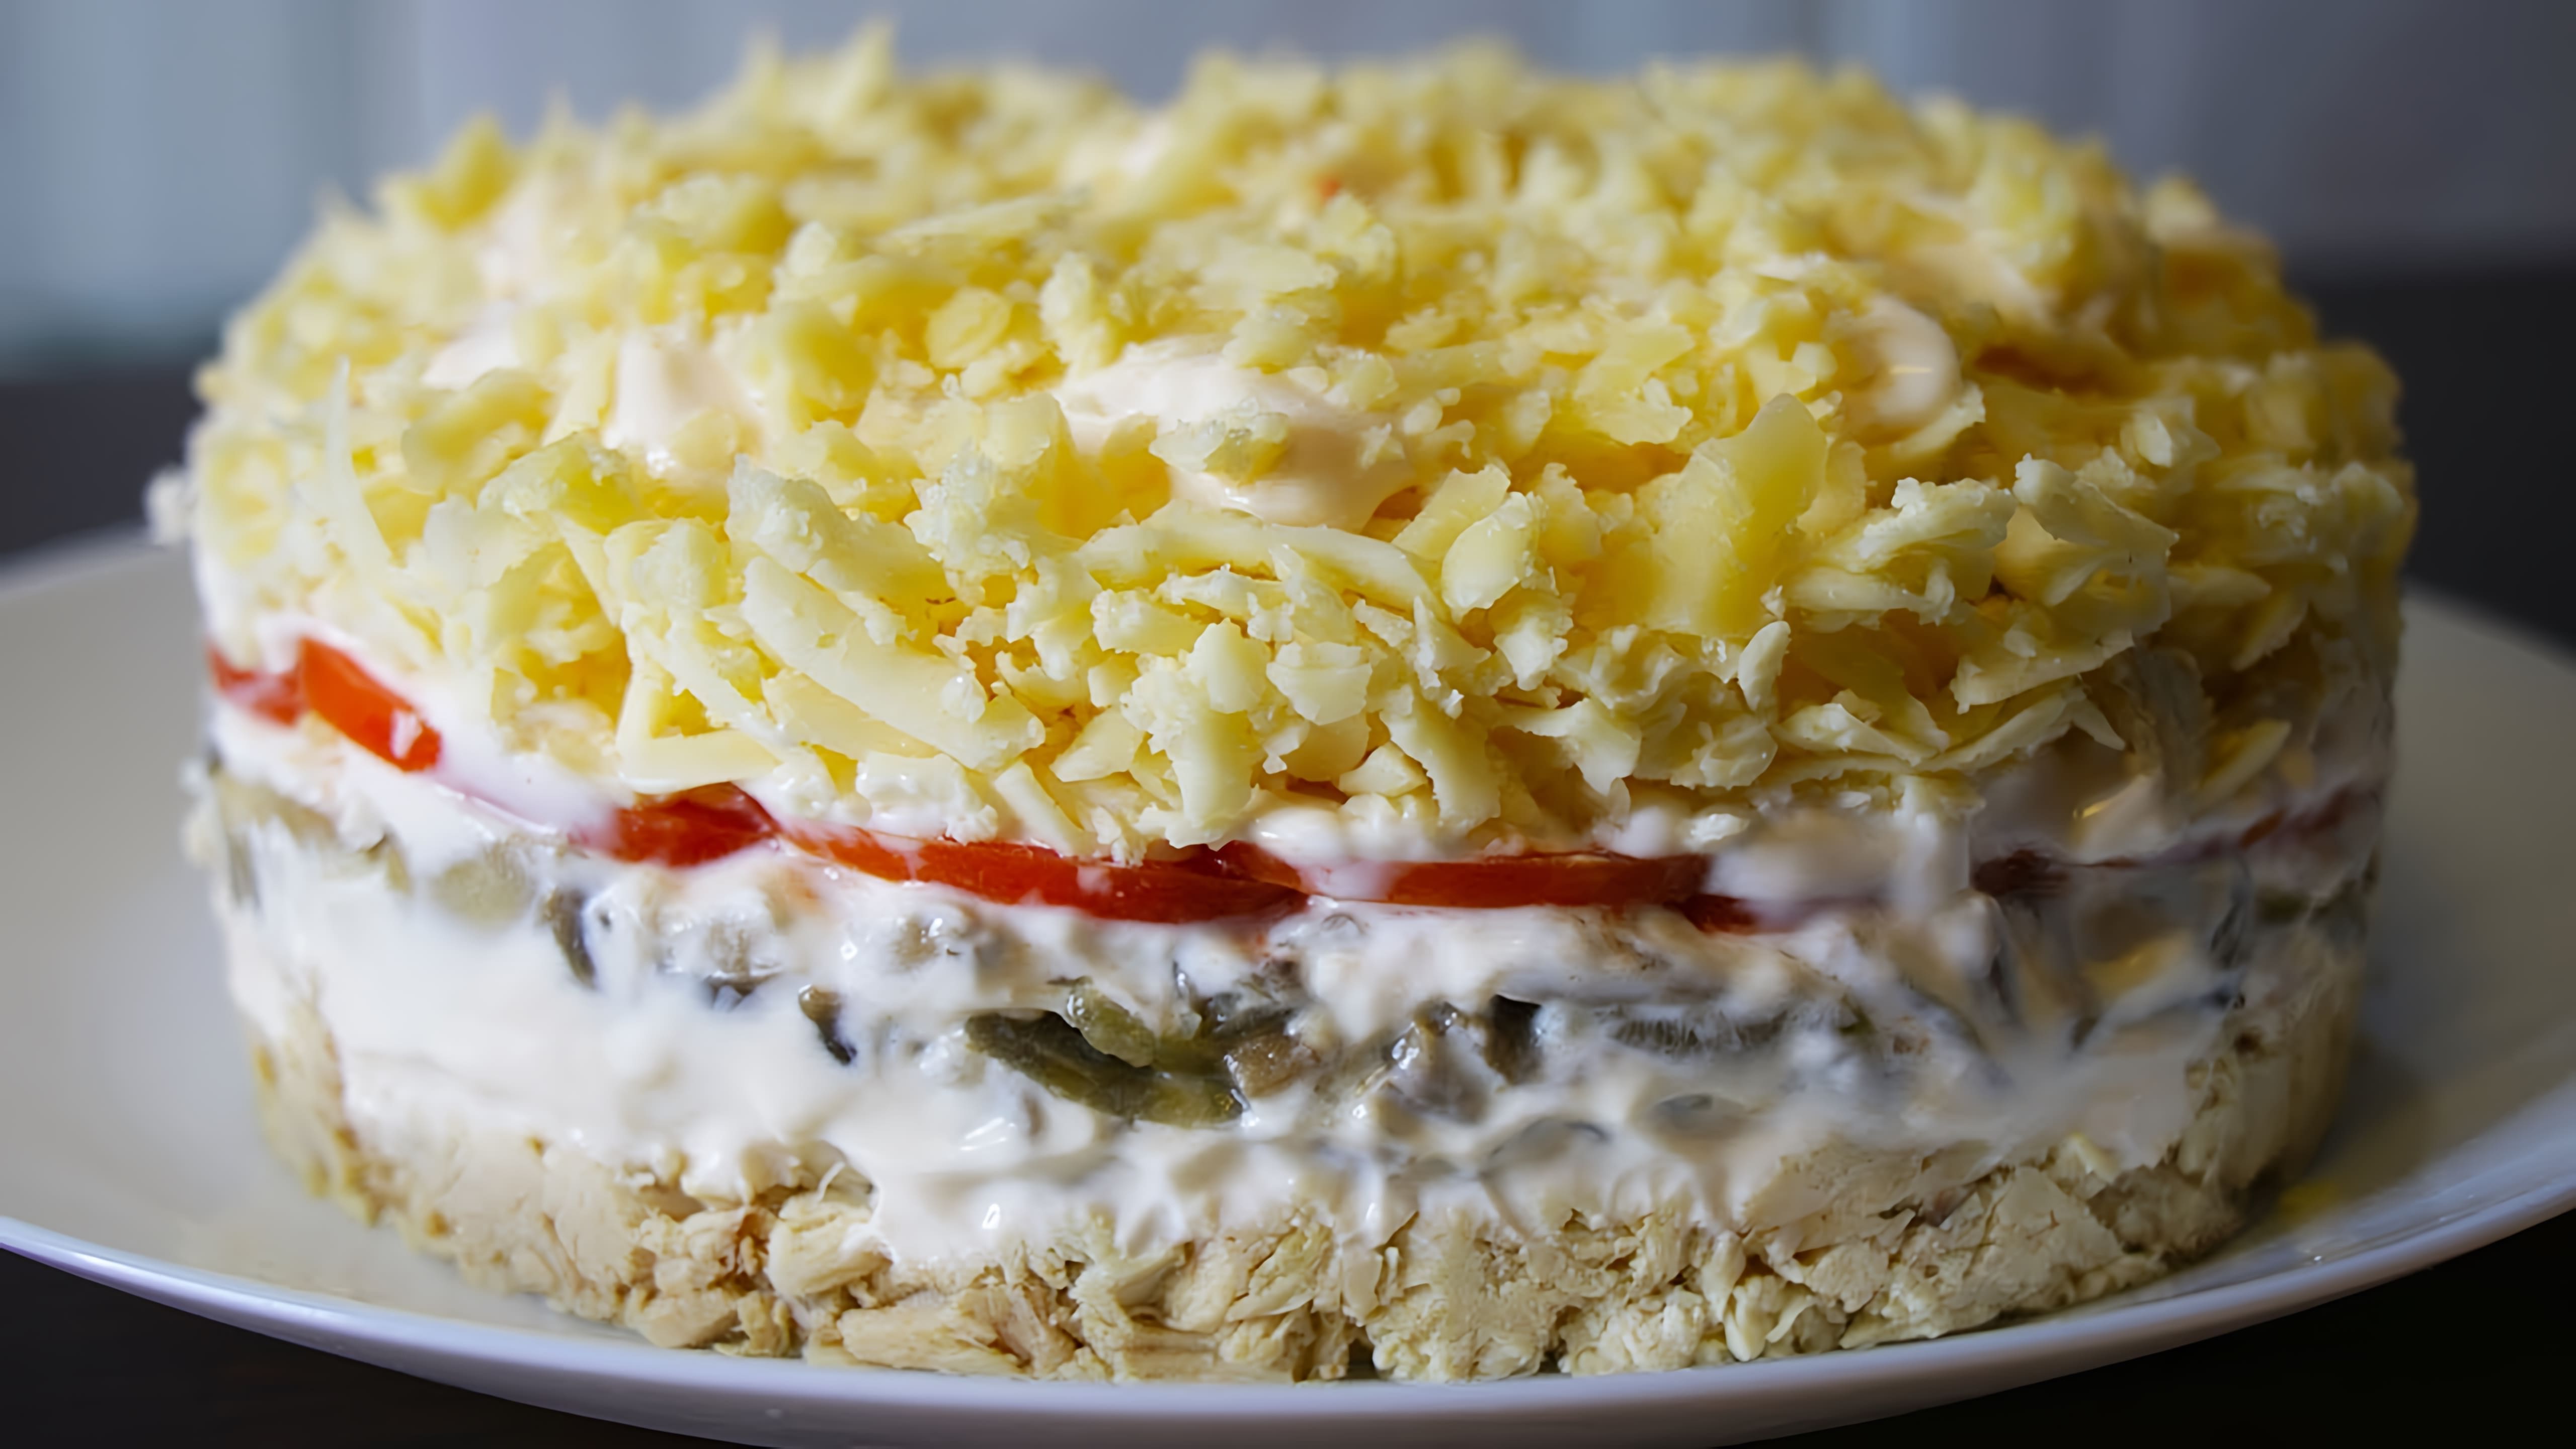 В этом видео демонстрируется рецепт салата "Гурман" с курицей, грибами и сыром